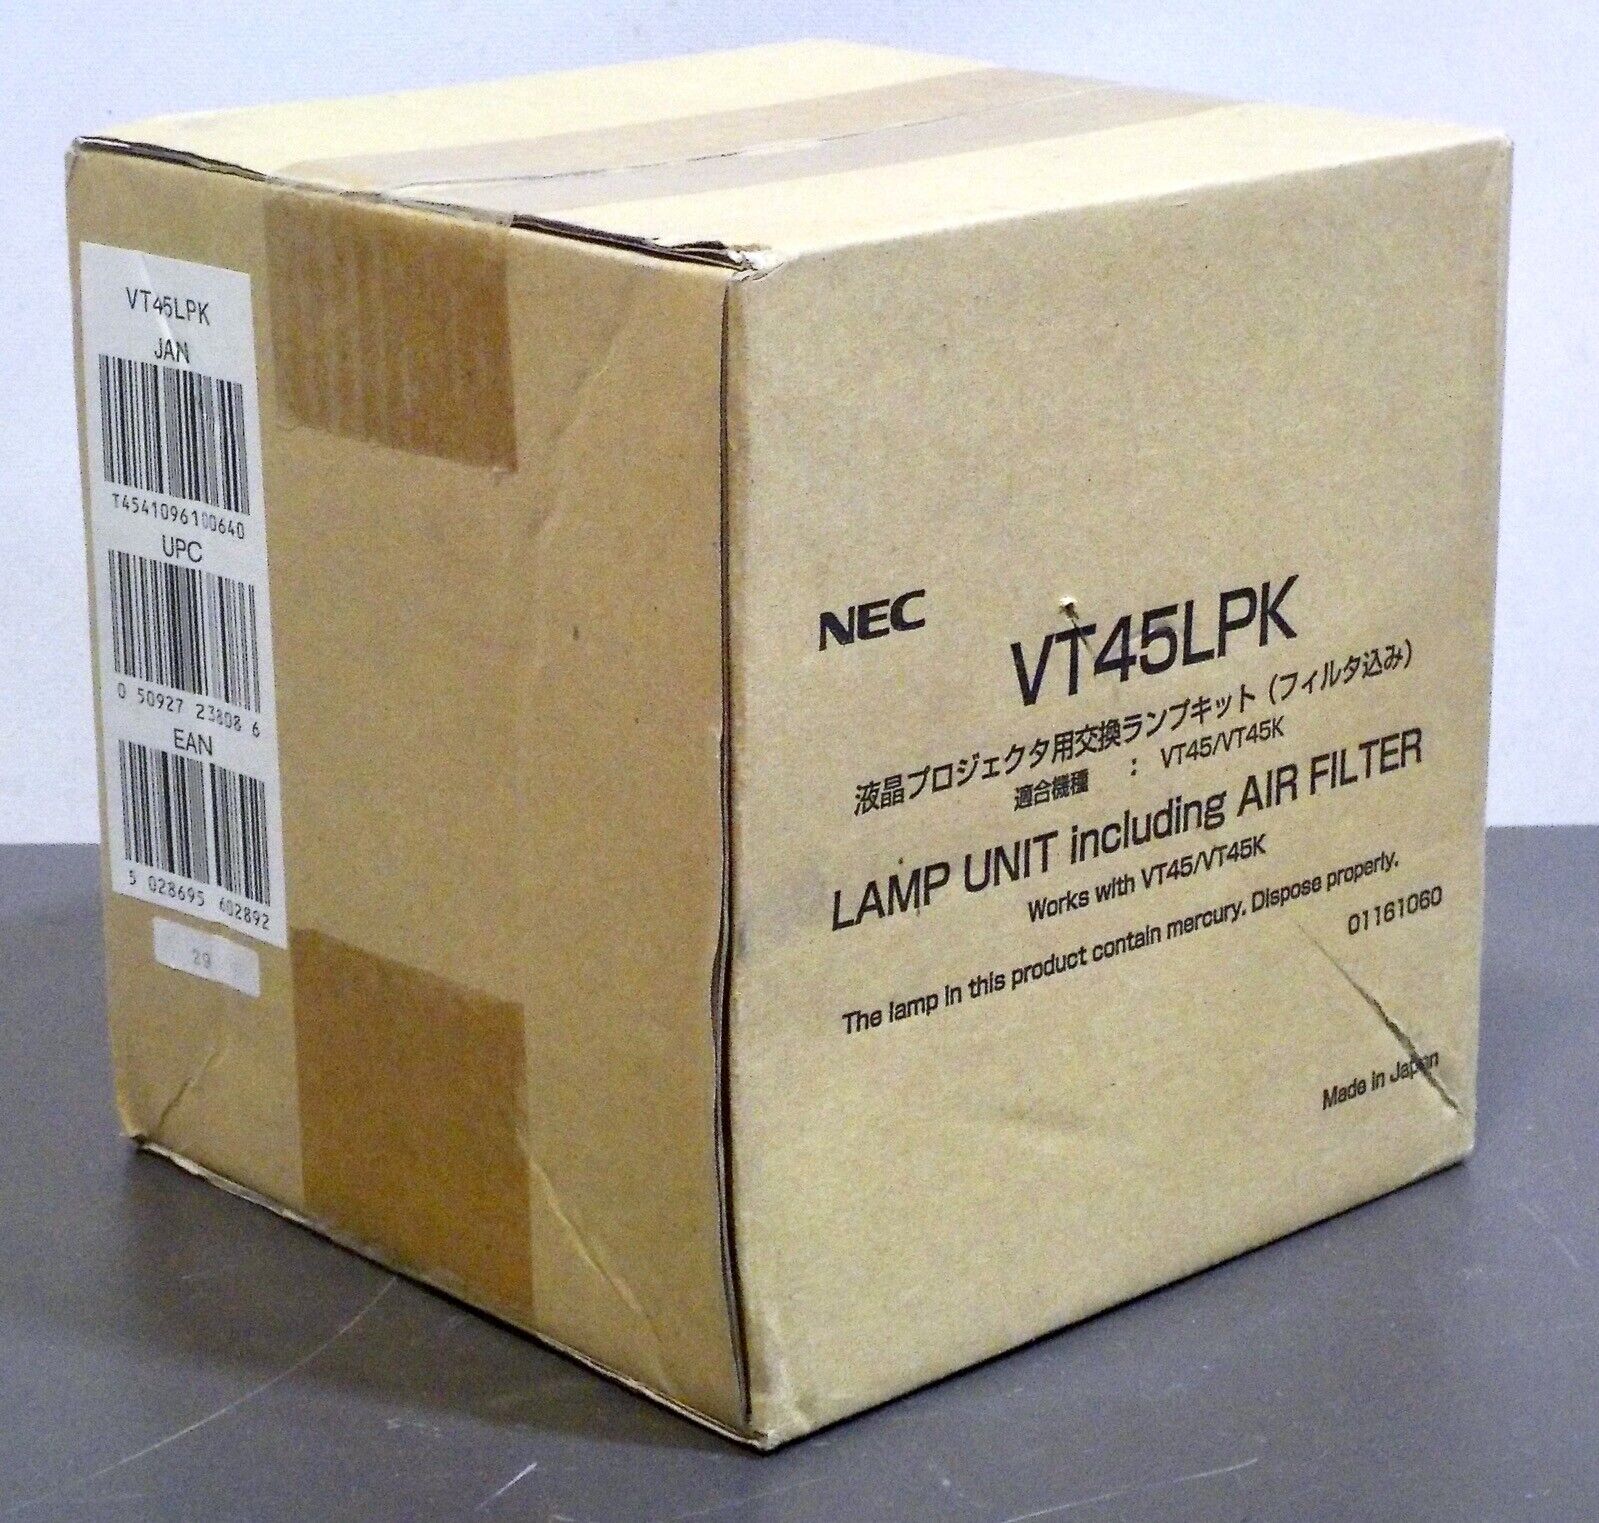 NEC VT74LPK Projector Lamp W/Air Filter for VT45 models - NEW!